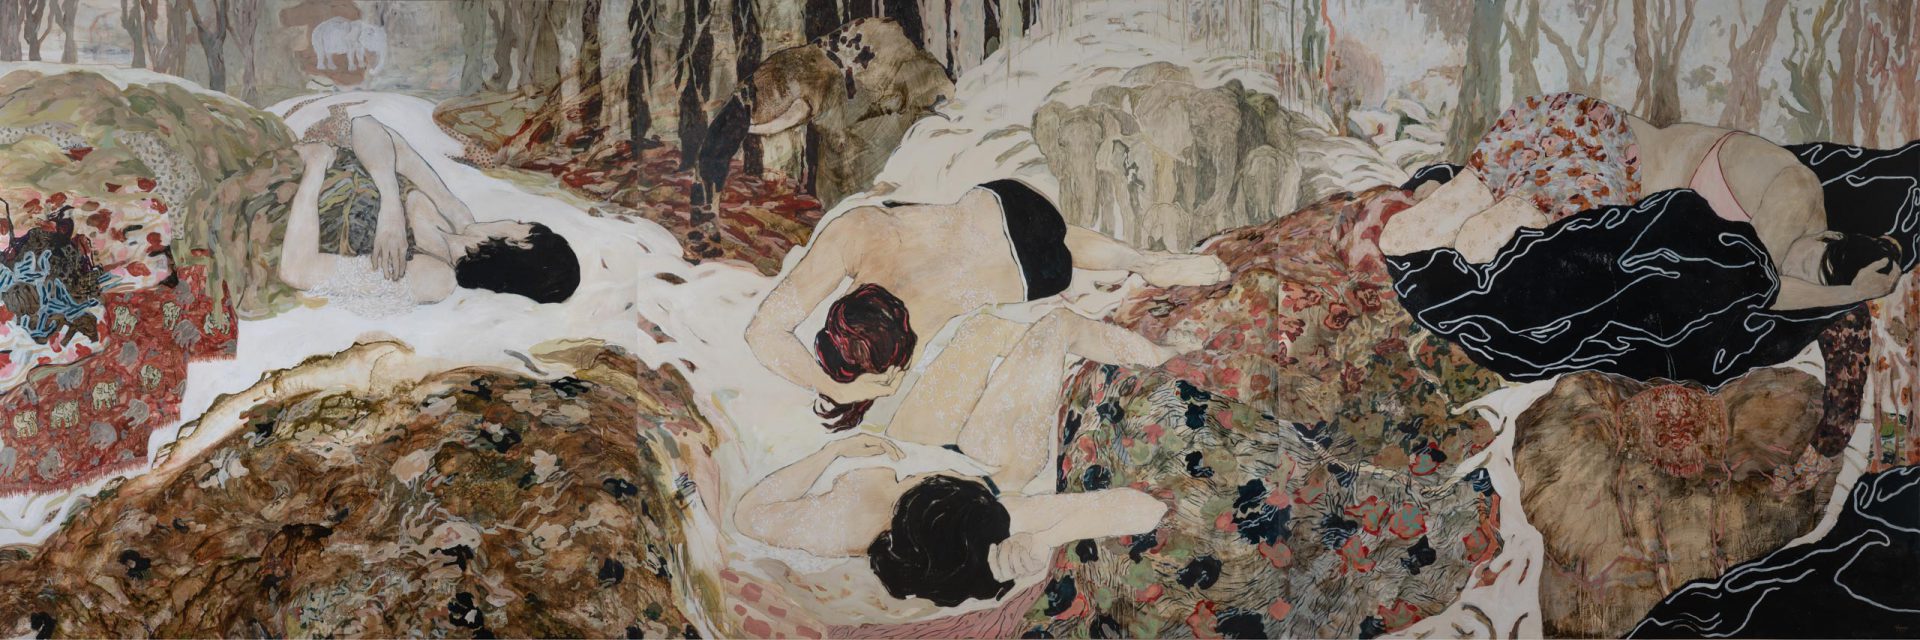 When untameable days come, mixed technique on canvas, triptych, 200 x 600 cm, 2016, public collection, Paul-Dini Museum

